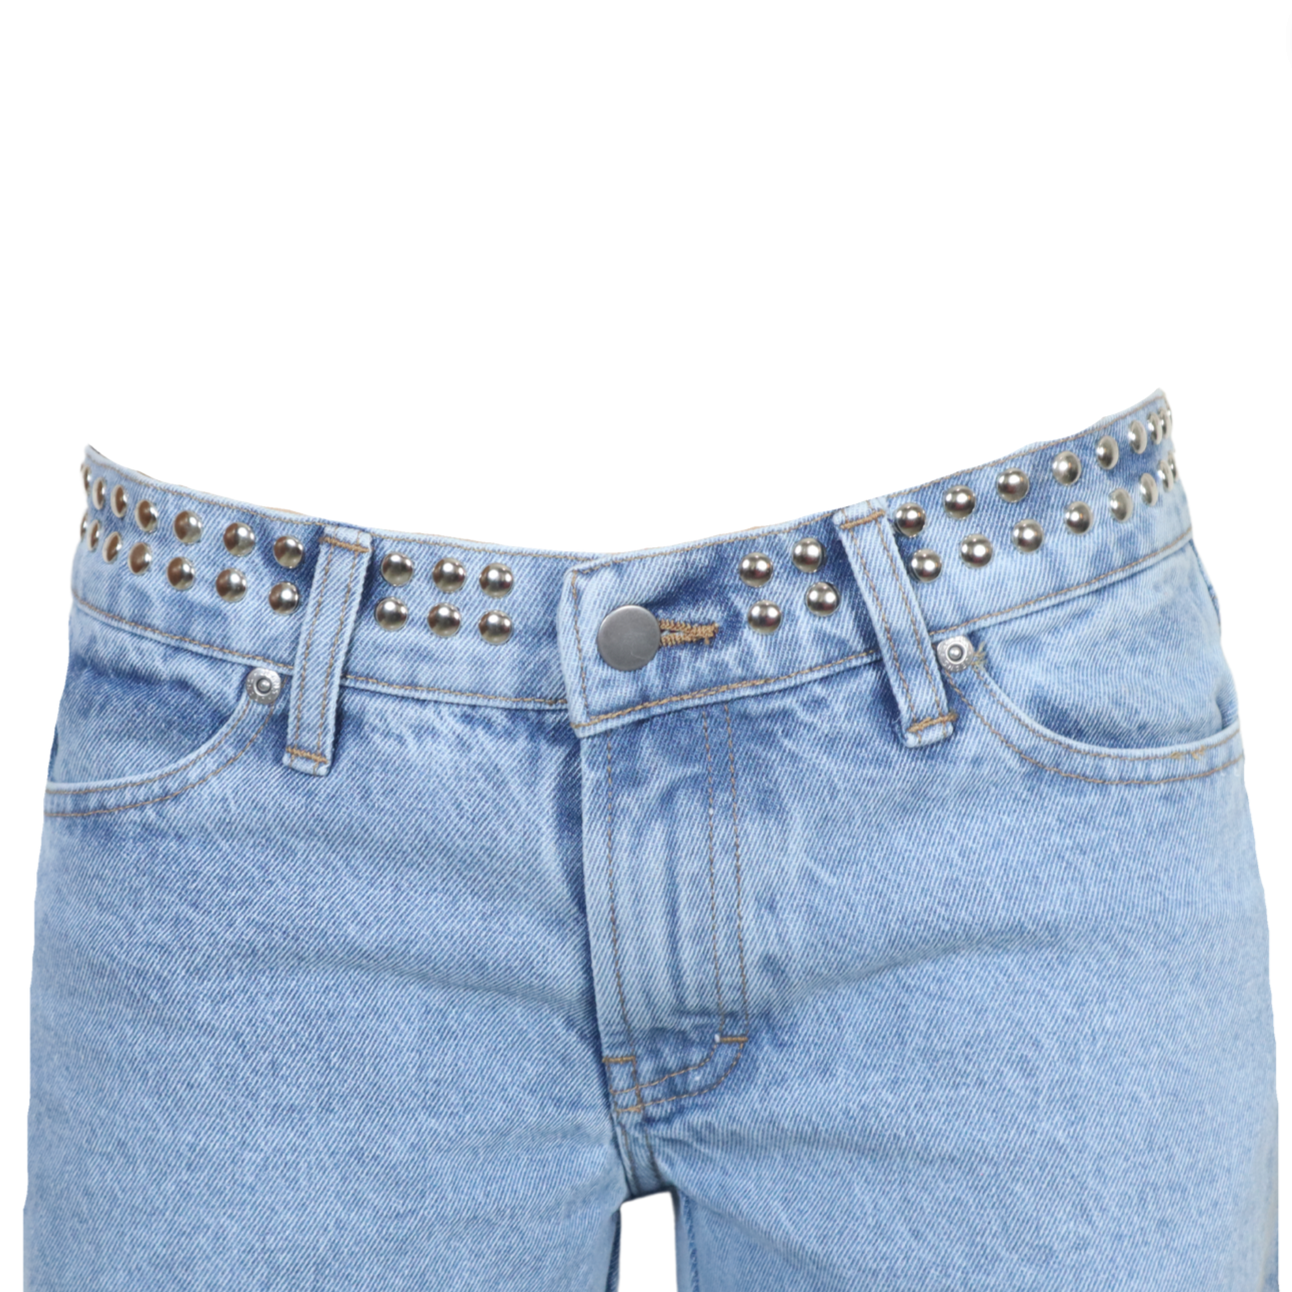 Jeans safari (PRÓXIMAMENTE RESTOCK)